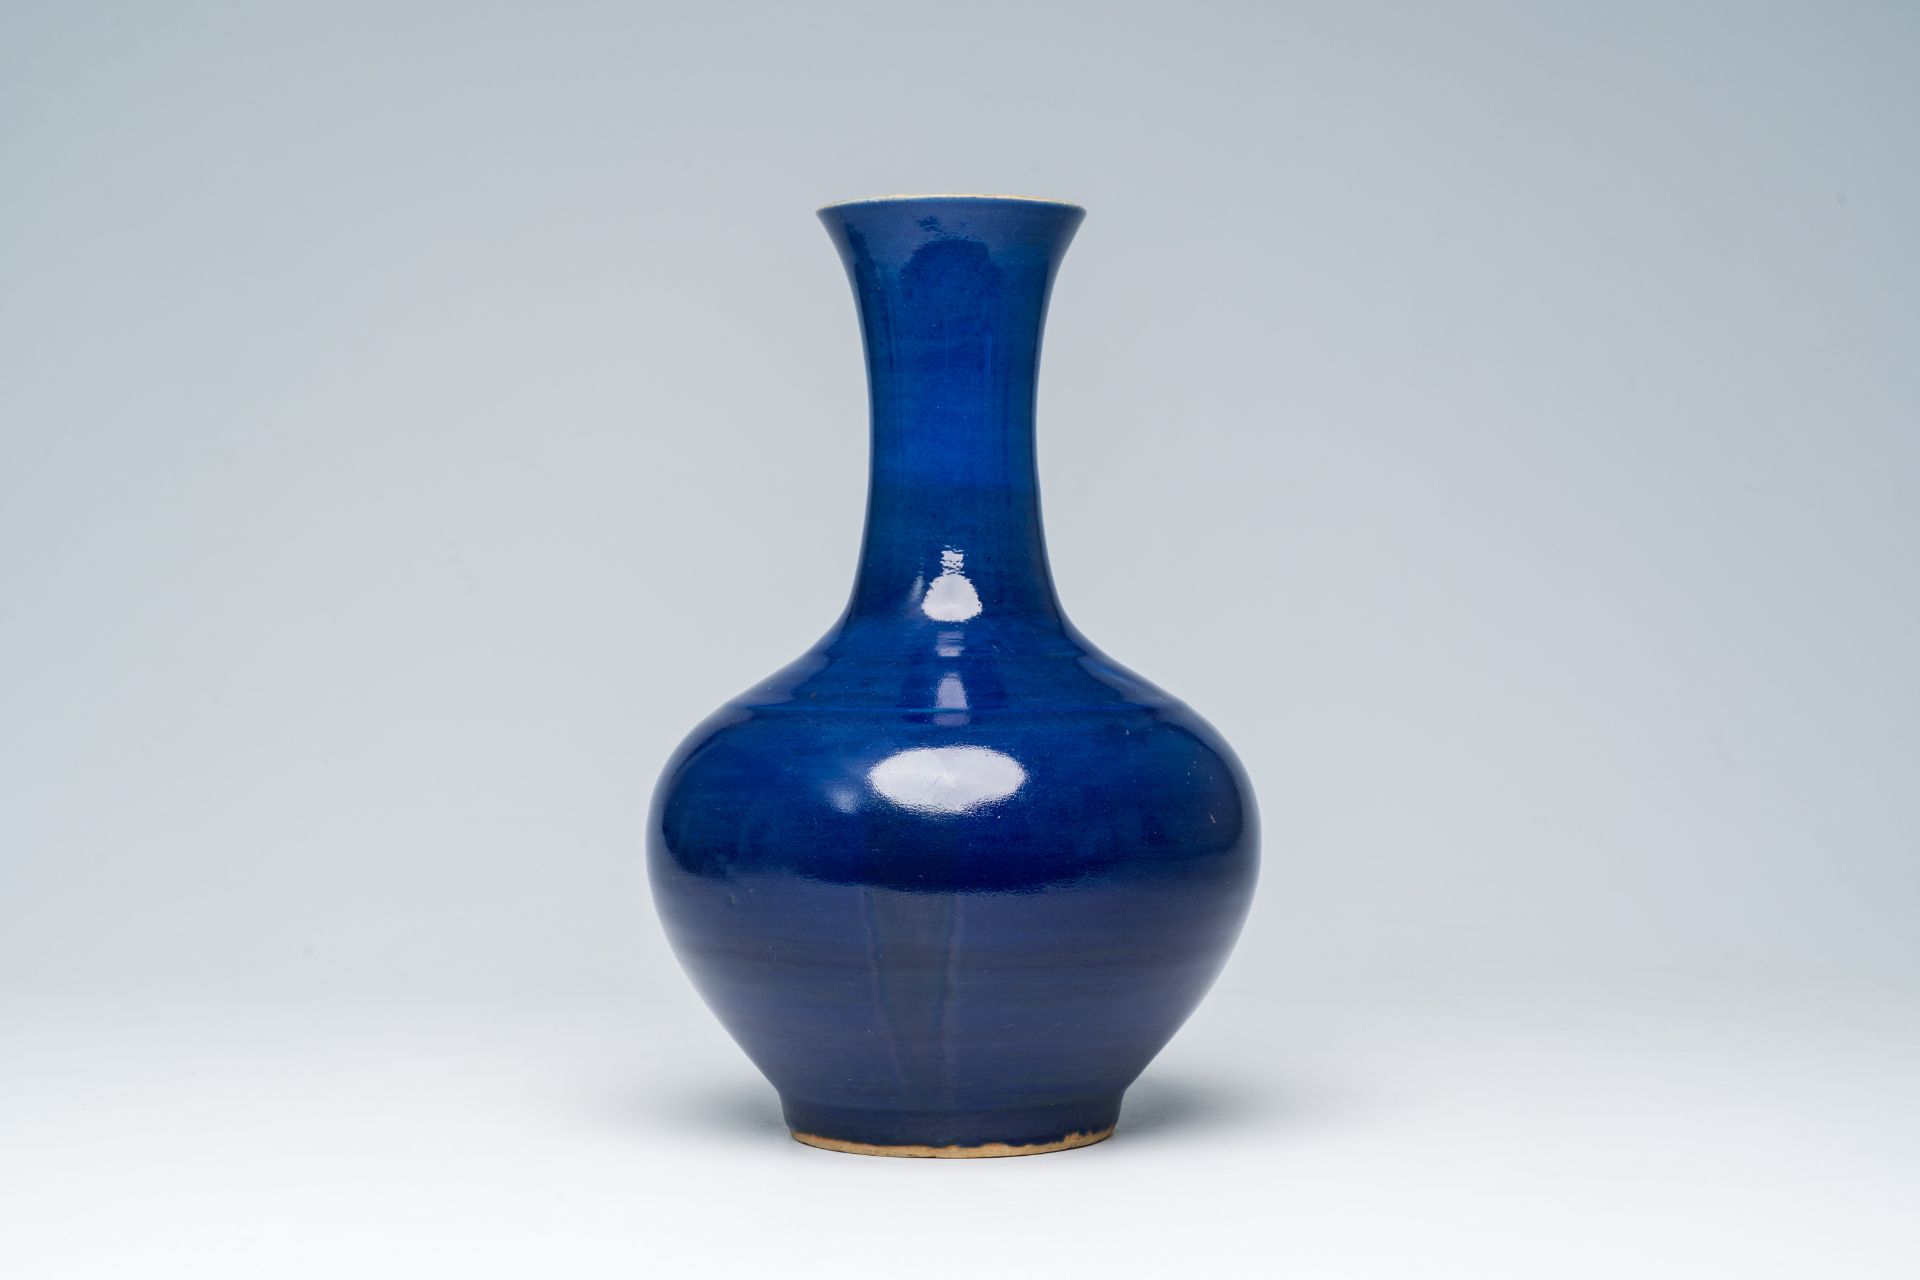 A Chinese monochrome blue glazed bottle vase, 19th C. - Image 4 of 6